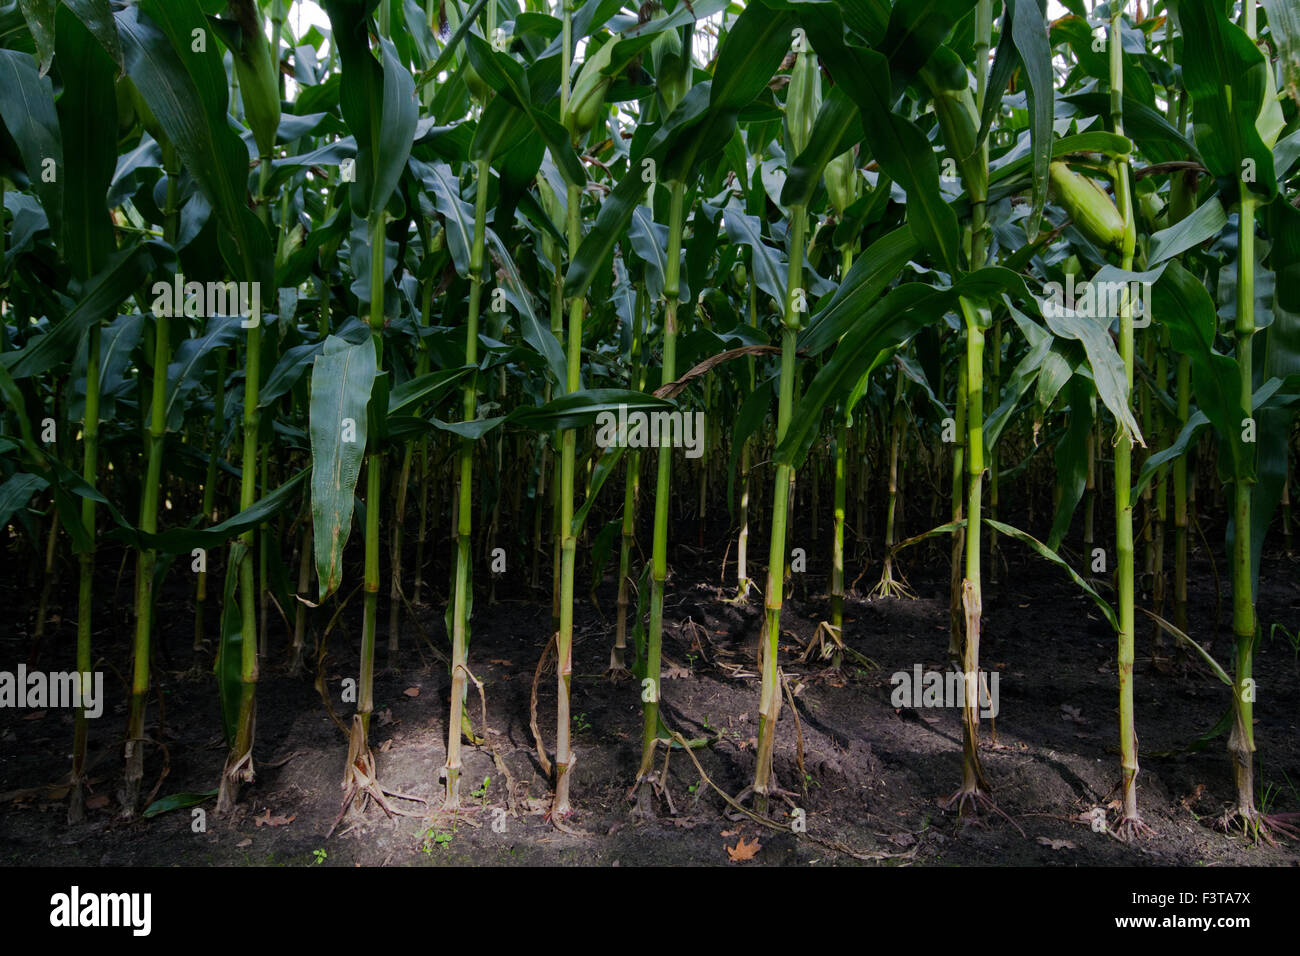 Vue dans un champ de maïs : terre, racines et tiges Banque D'Images